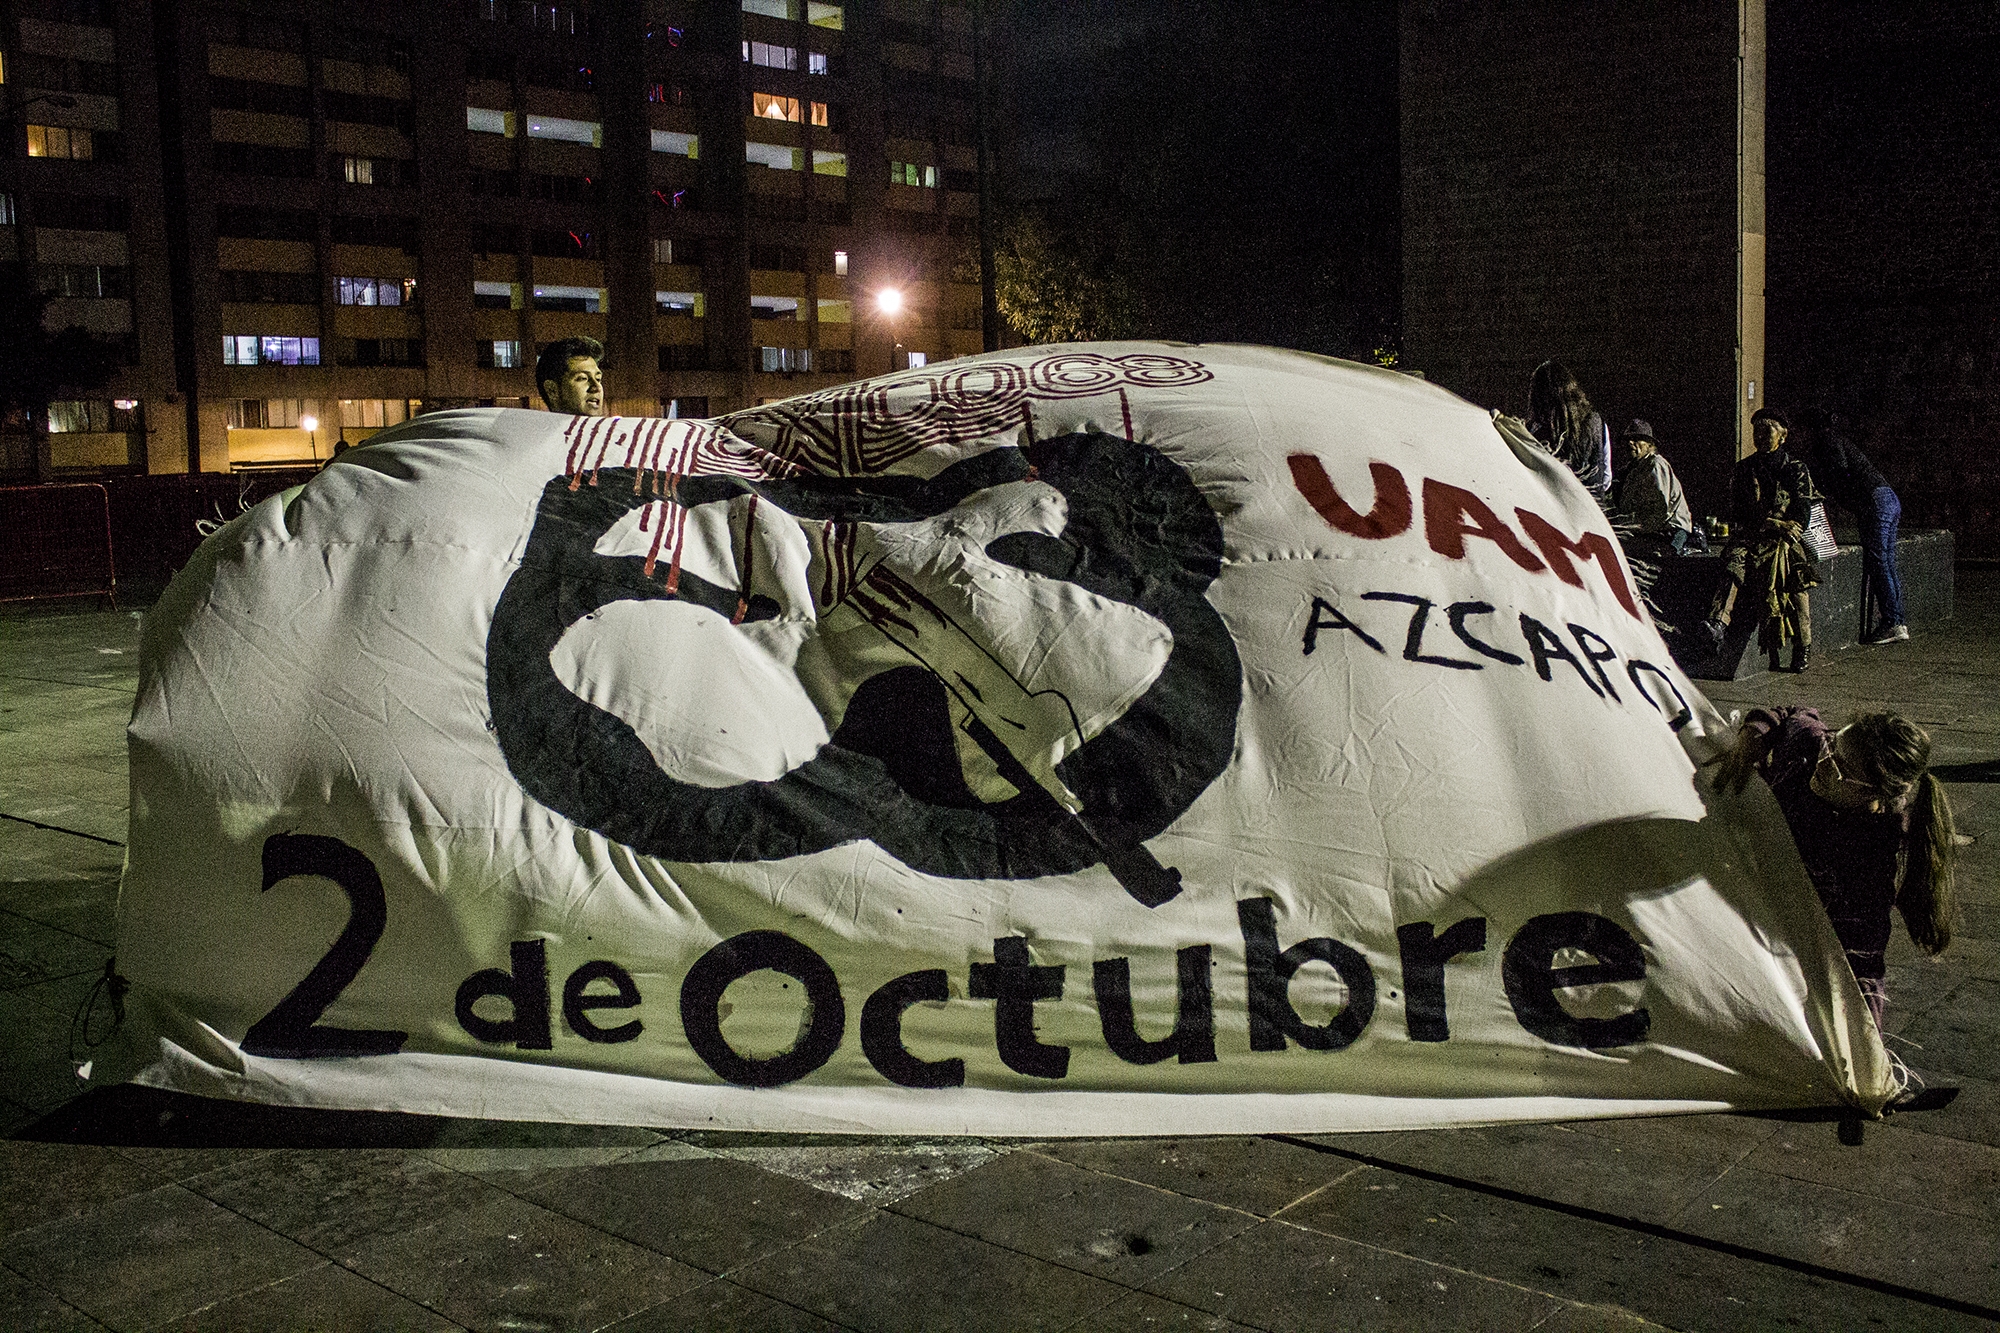 La represión estudiantil del 2 de octubre de 1968, en la memoria colectiva a 50 años de la masacre en Tlatelolco.